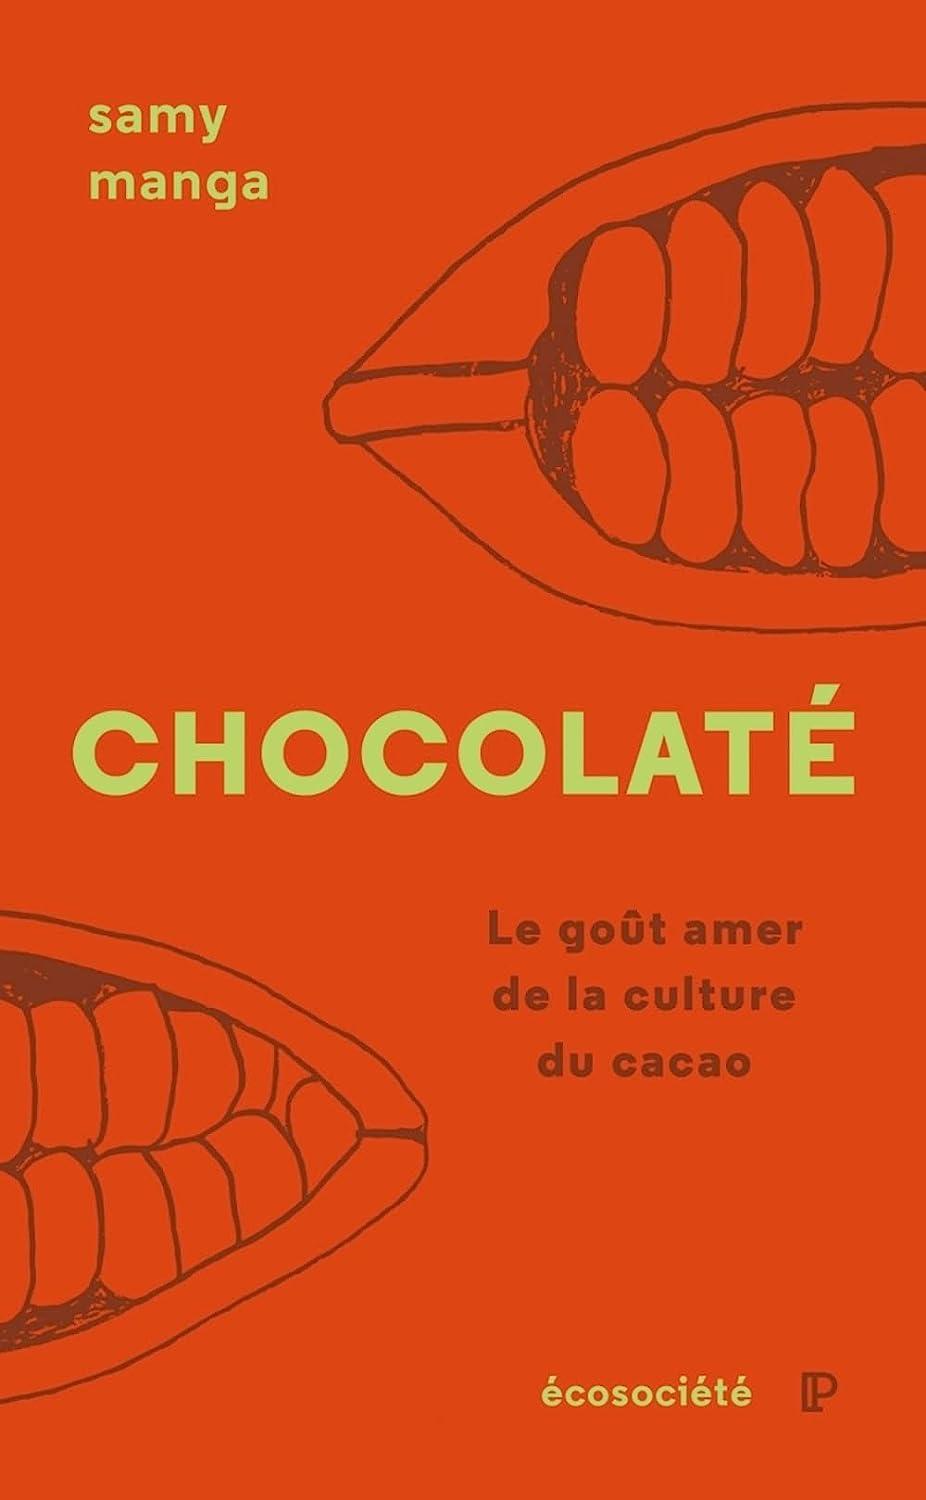 La couverture du livre "Chocolaté" de Samy Manga. [Editions Ecosociété]